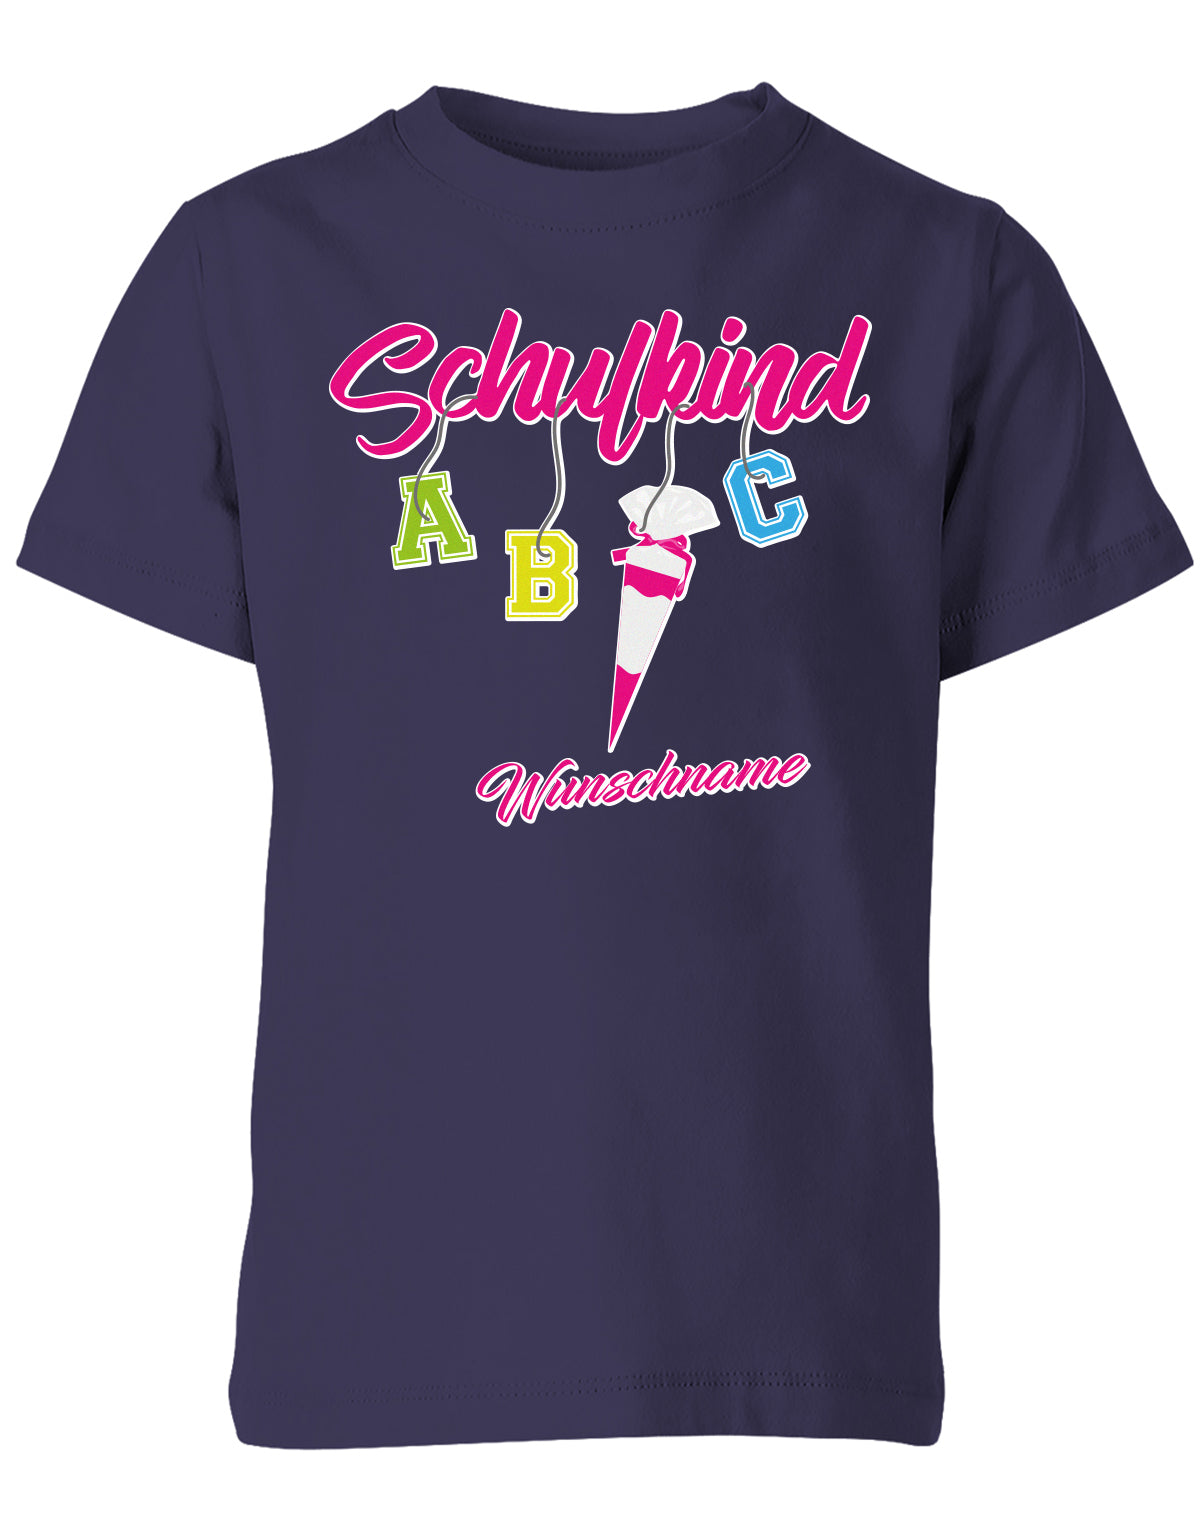 Schulkind ABC Schultüte Wunschname Blau oder Pink Einschulung Kinder T-Shirt Navy Pink